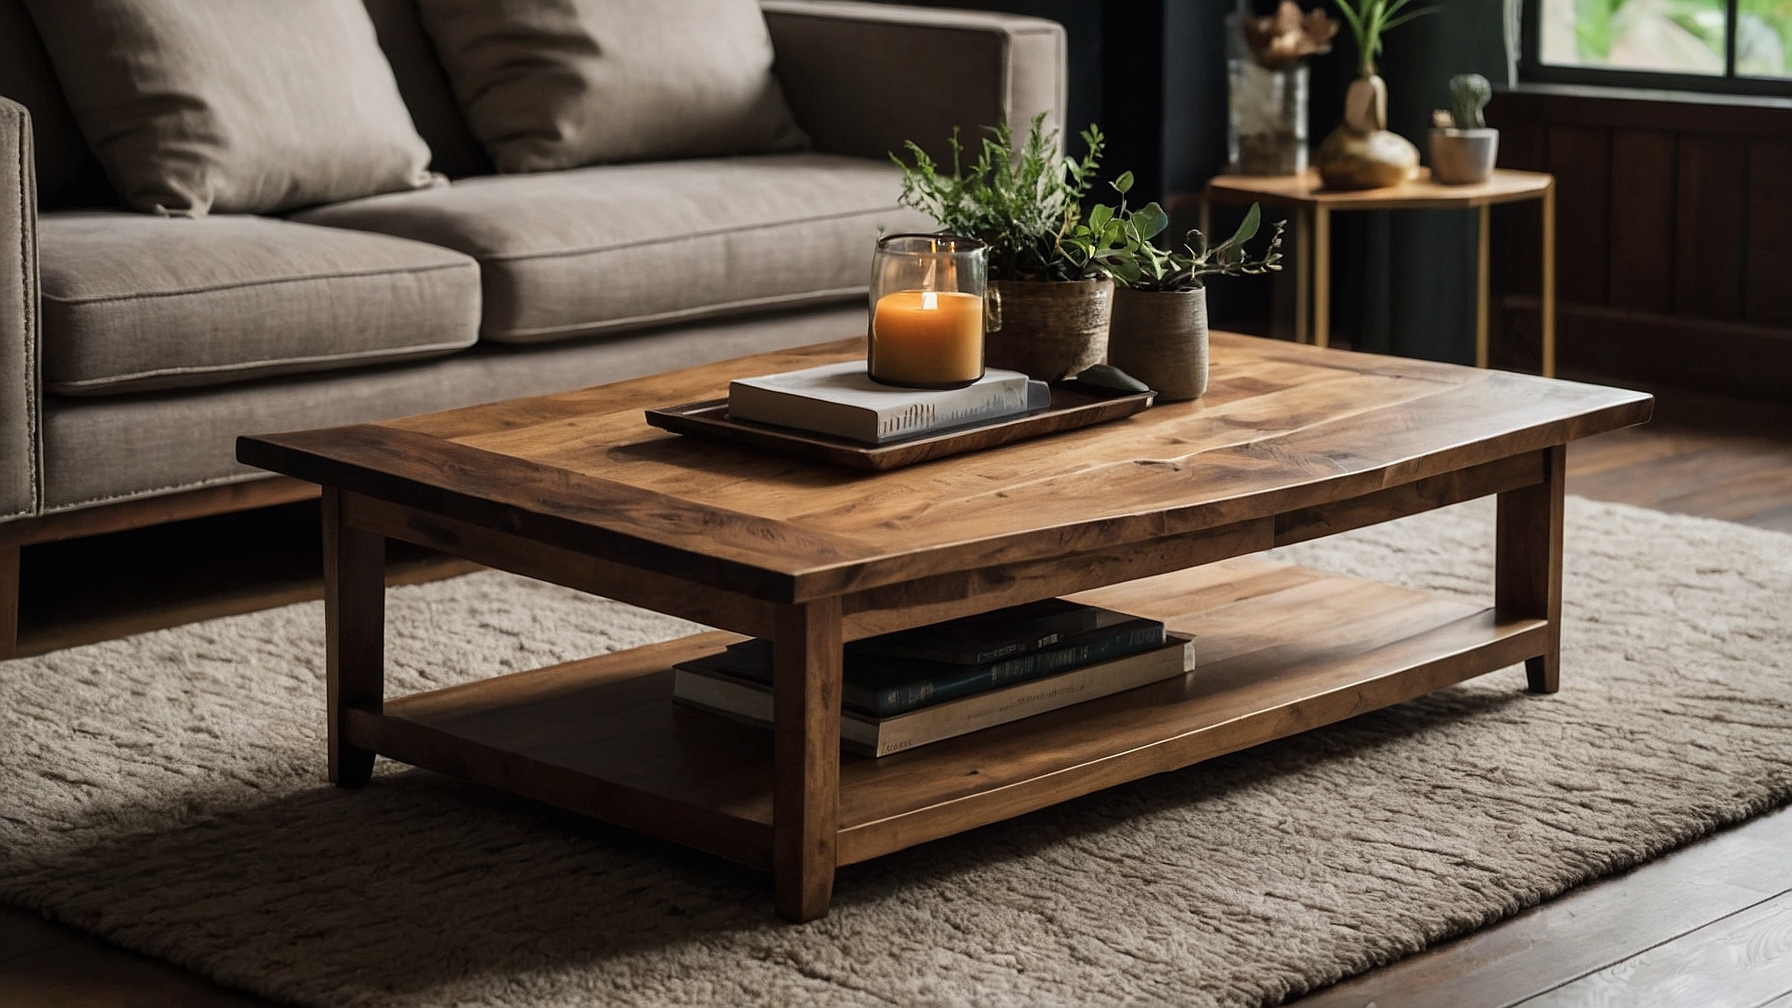 Default Minimalist house Wood Coffee Table Modern Style Timel 3 3